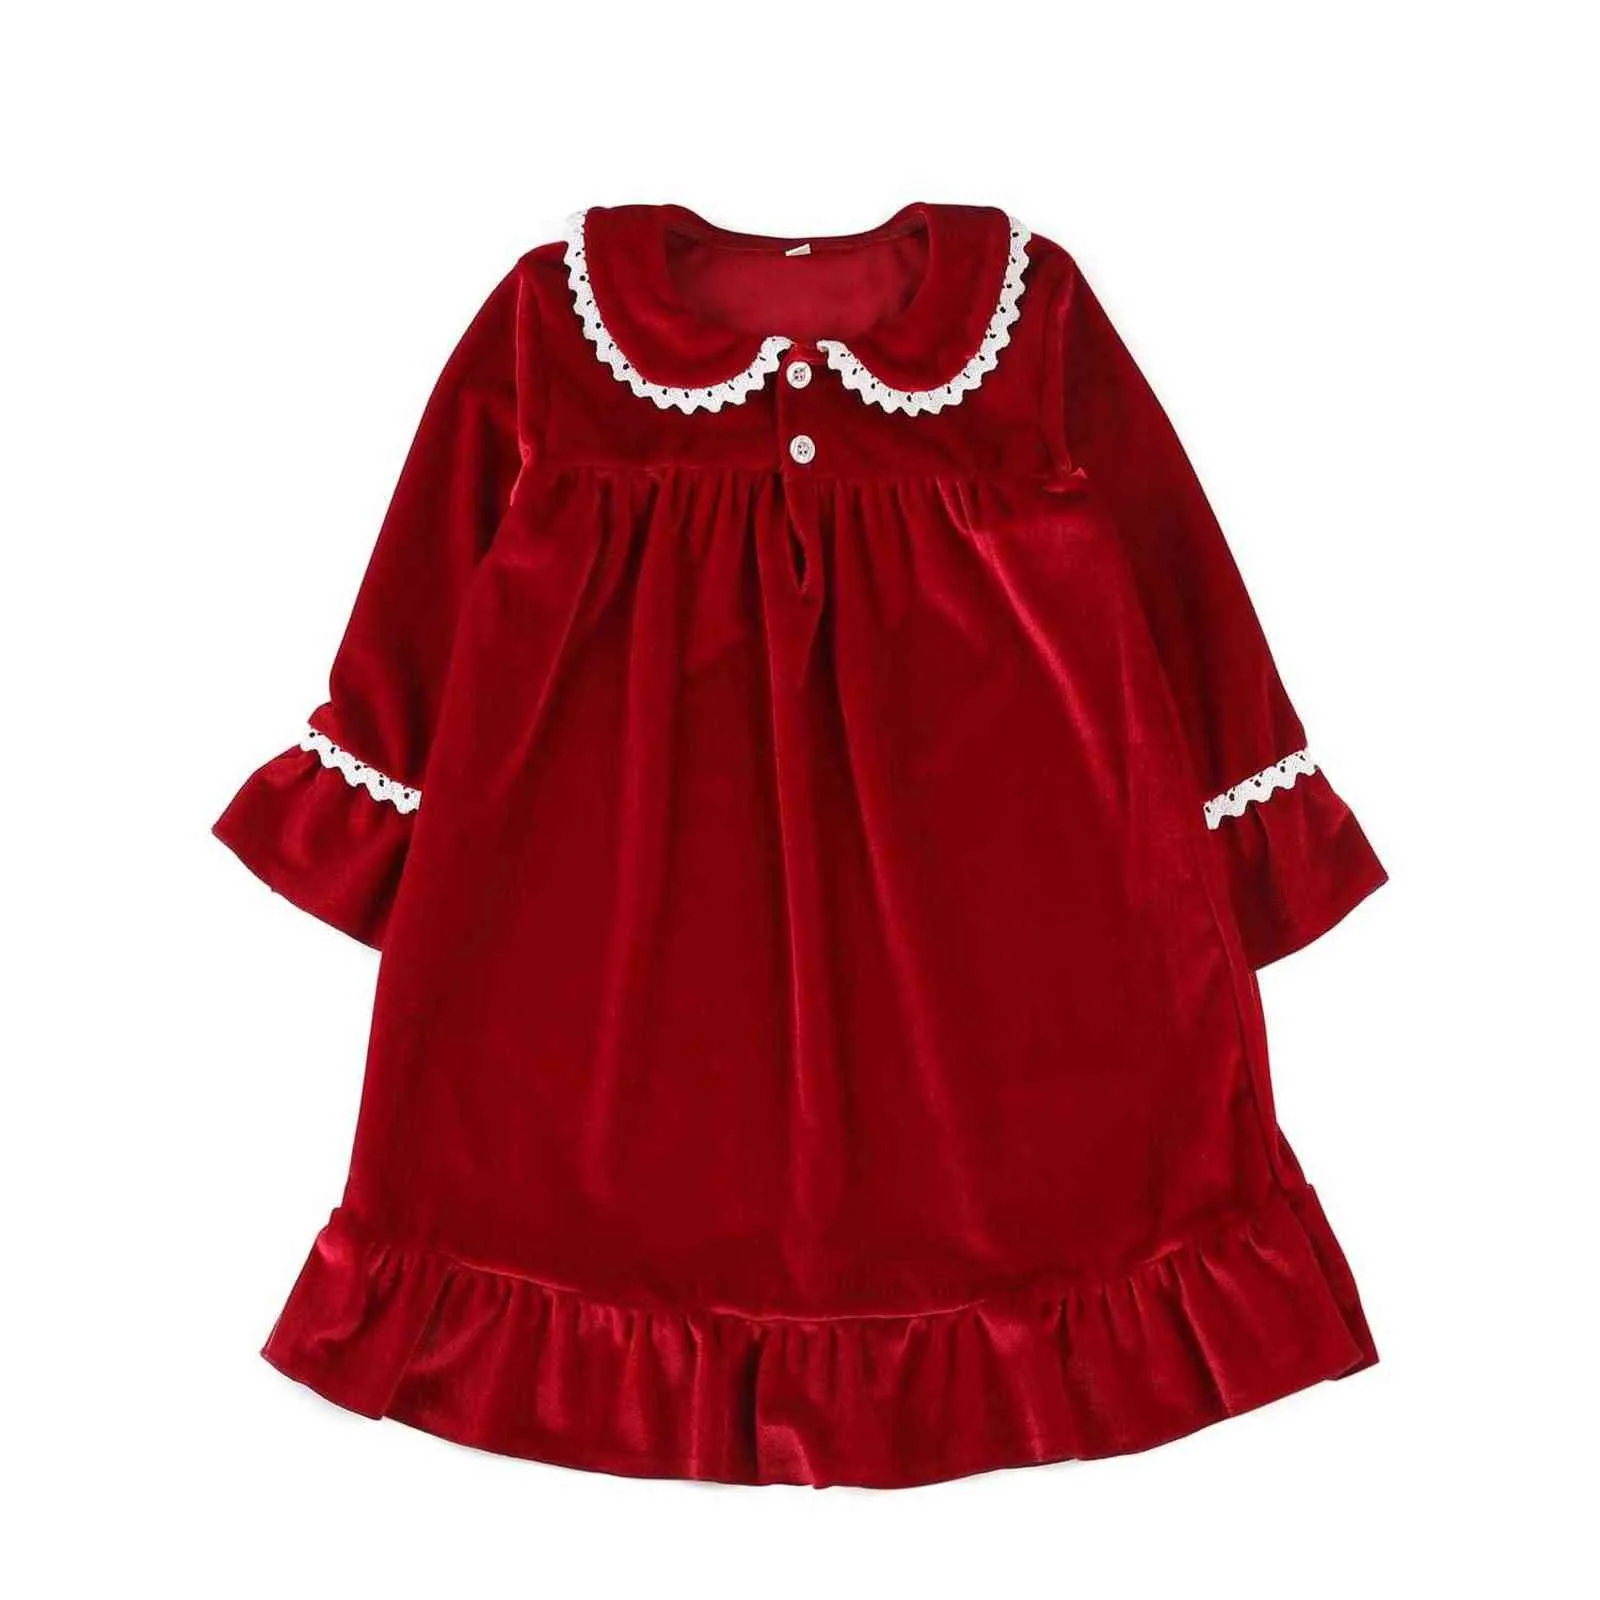 Boutique Fashion Velvet Fabric Toddler Sleep Suit Christmas Baby Pyjamas Set Lace Girls Sleepwear 211105